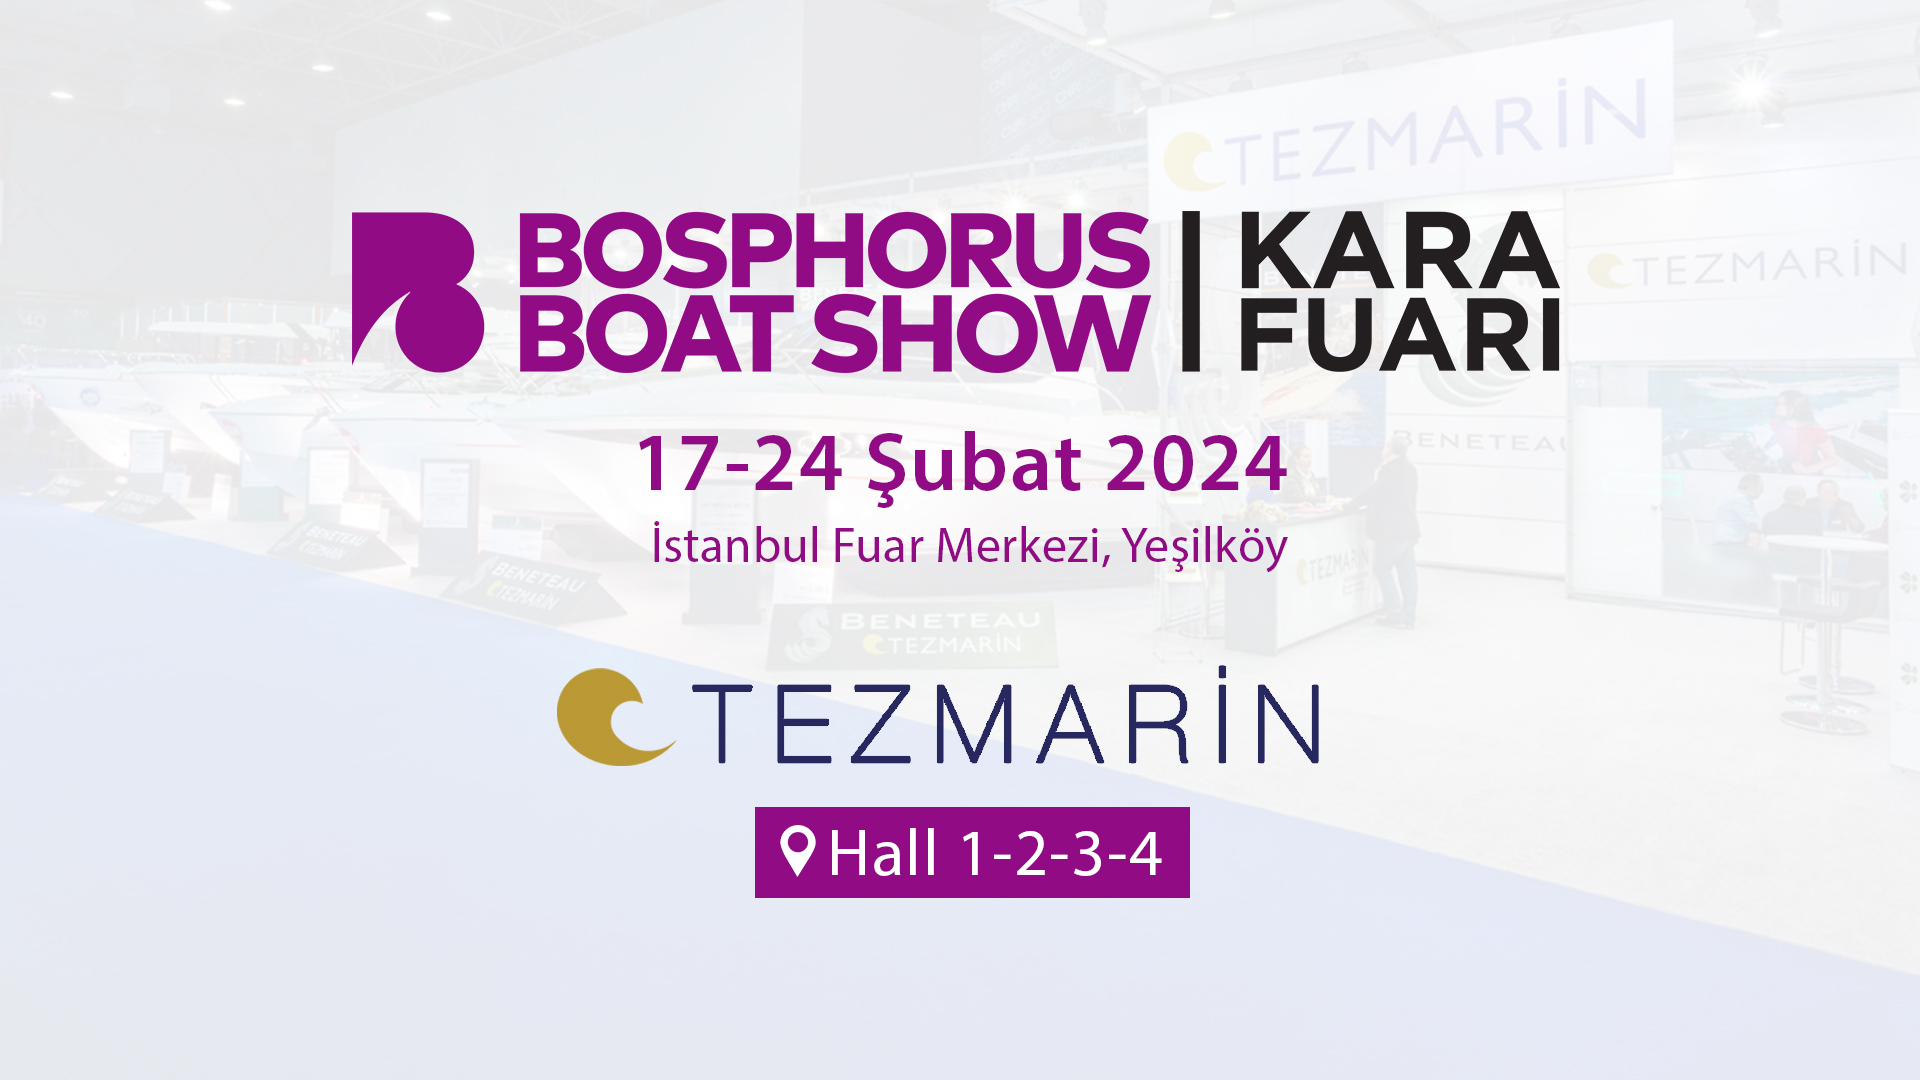 Bosphorus Boat Show Kara / 17-24 Şubat 2024